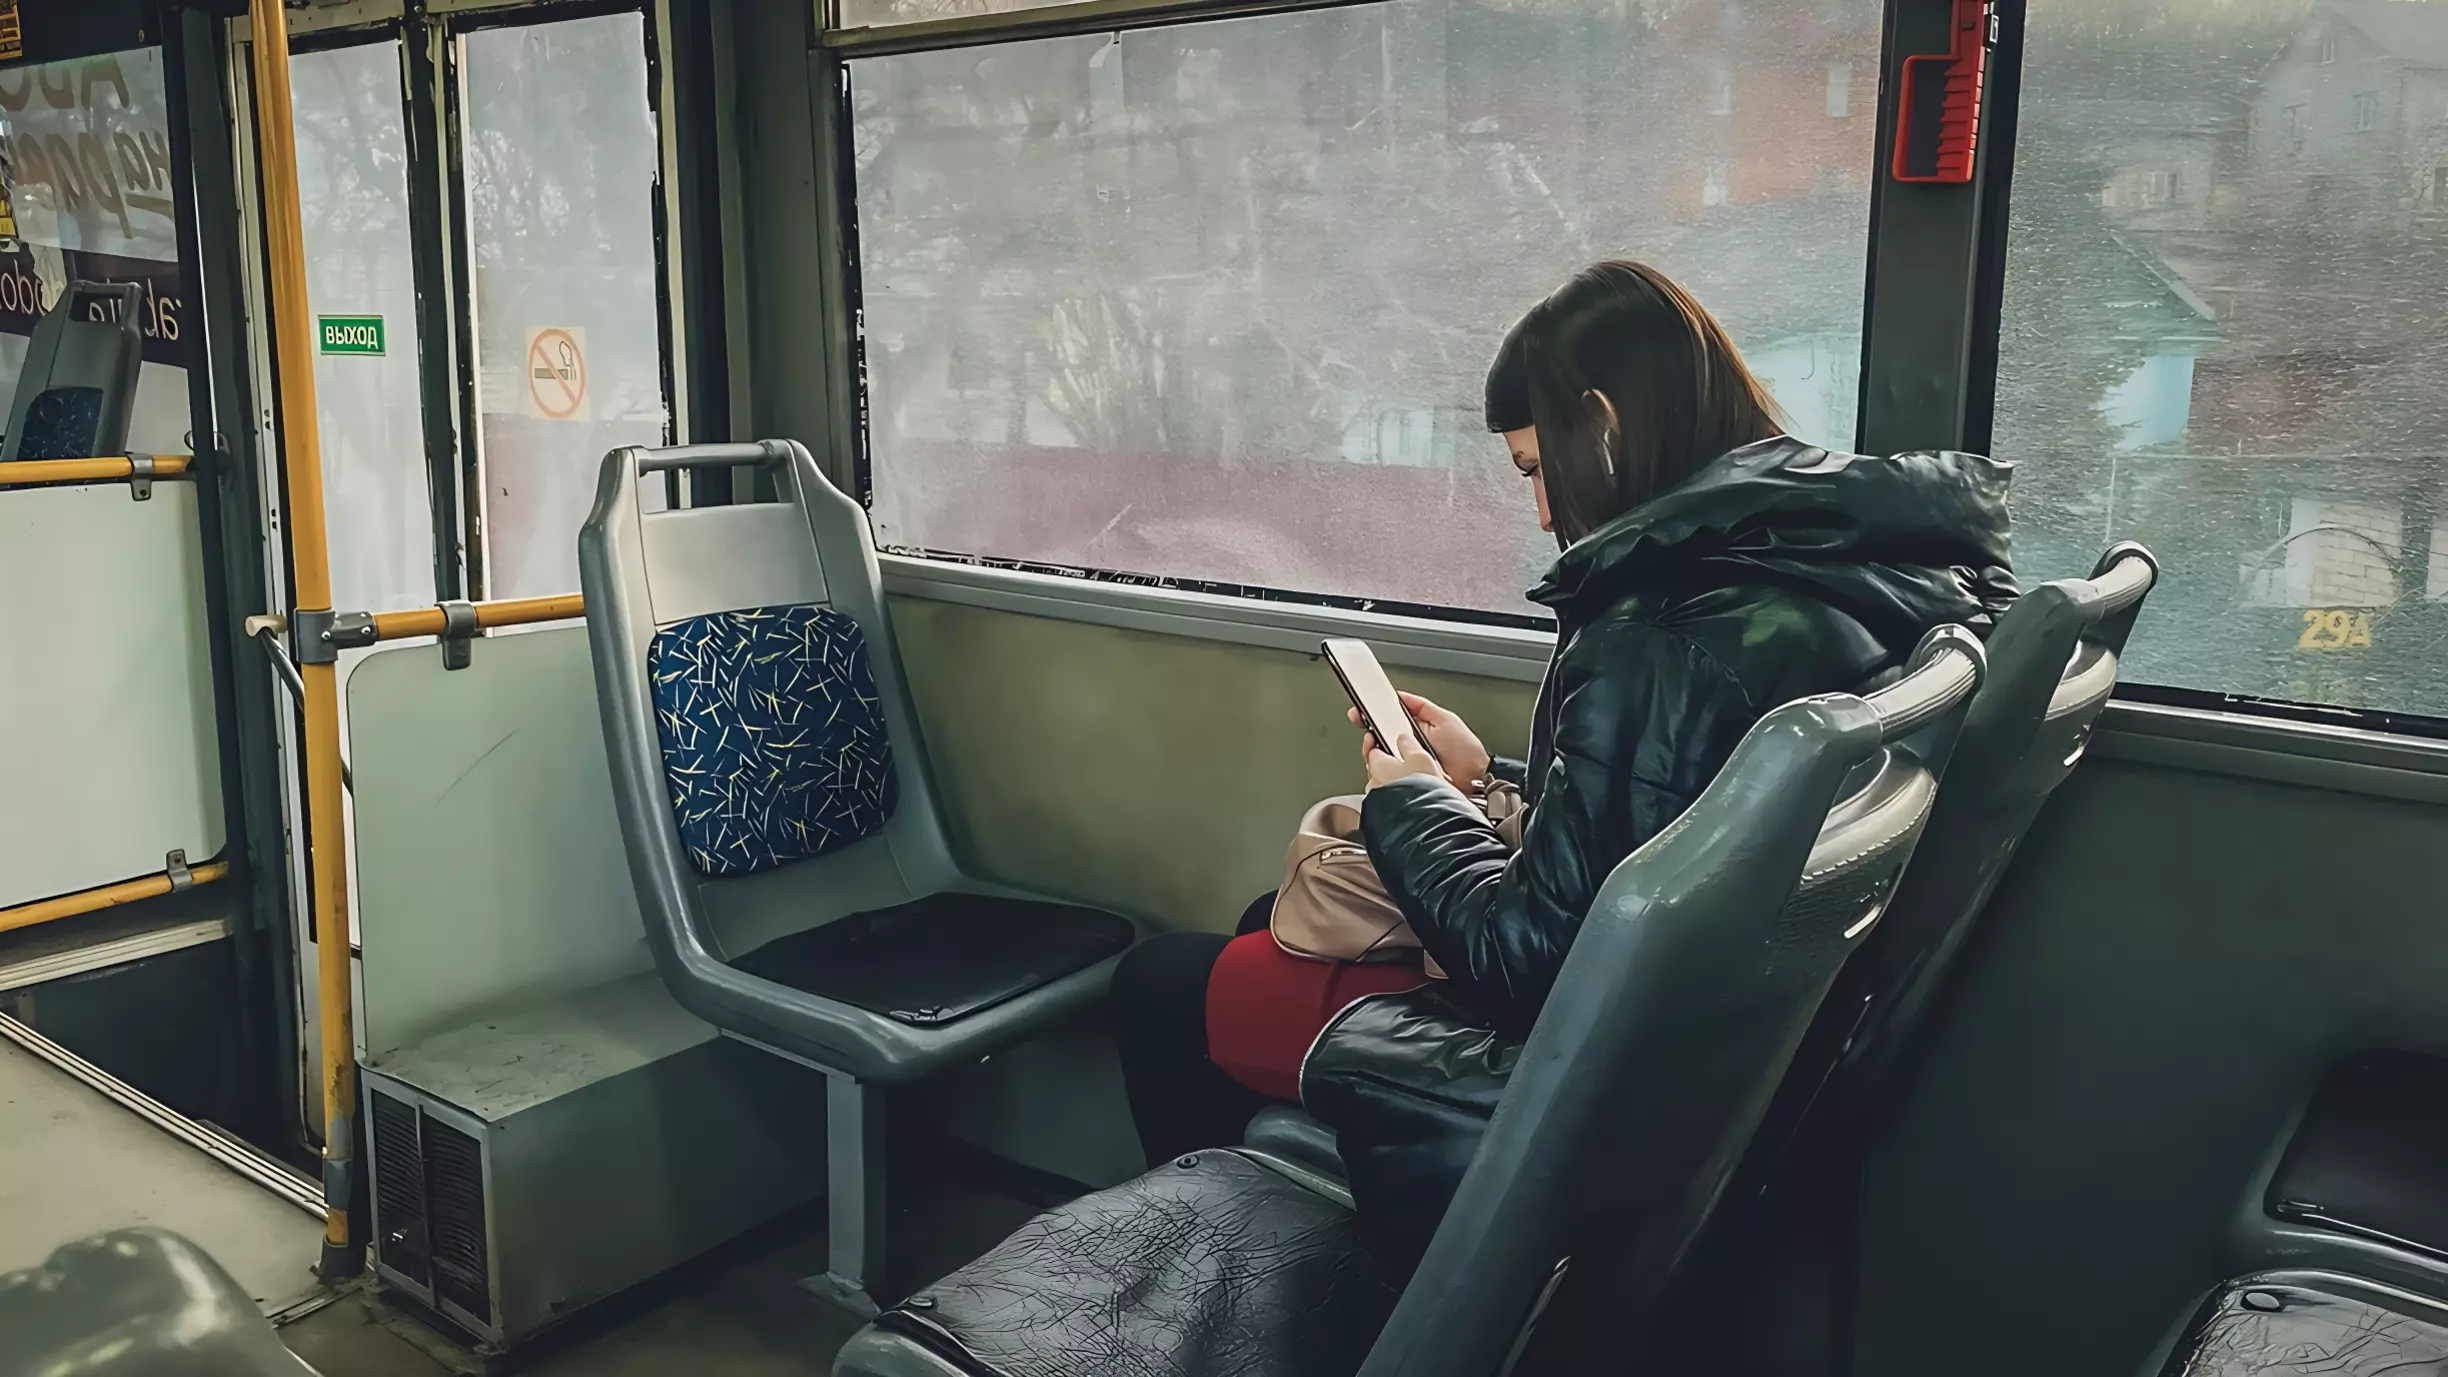 Урбанист назвал очень низкой стоимость проезда на троллейбусе в Ставрополе